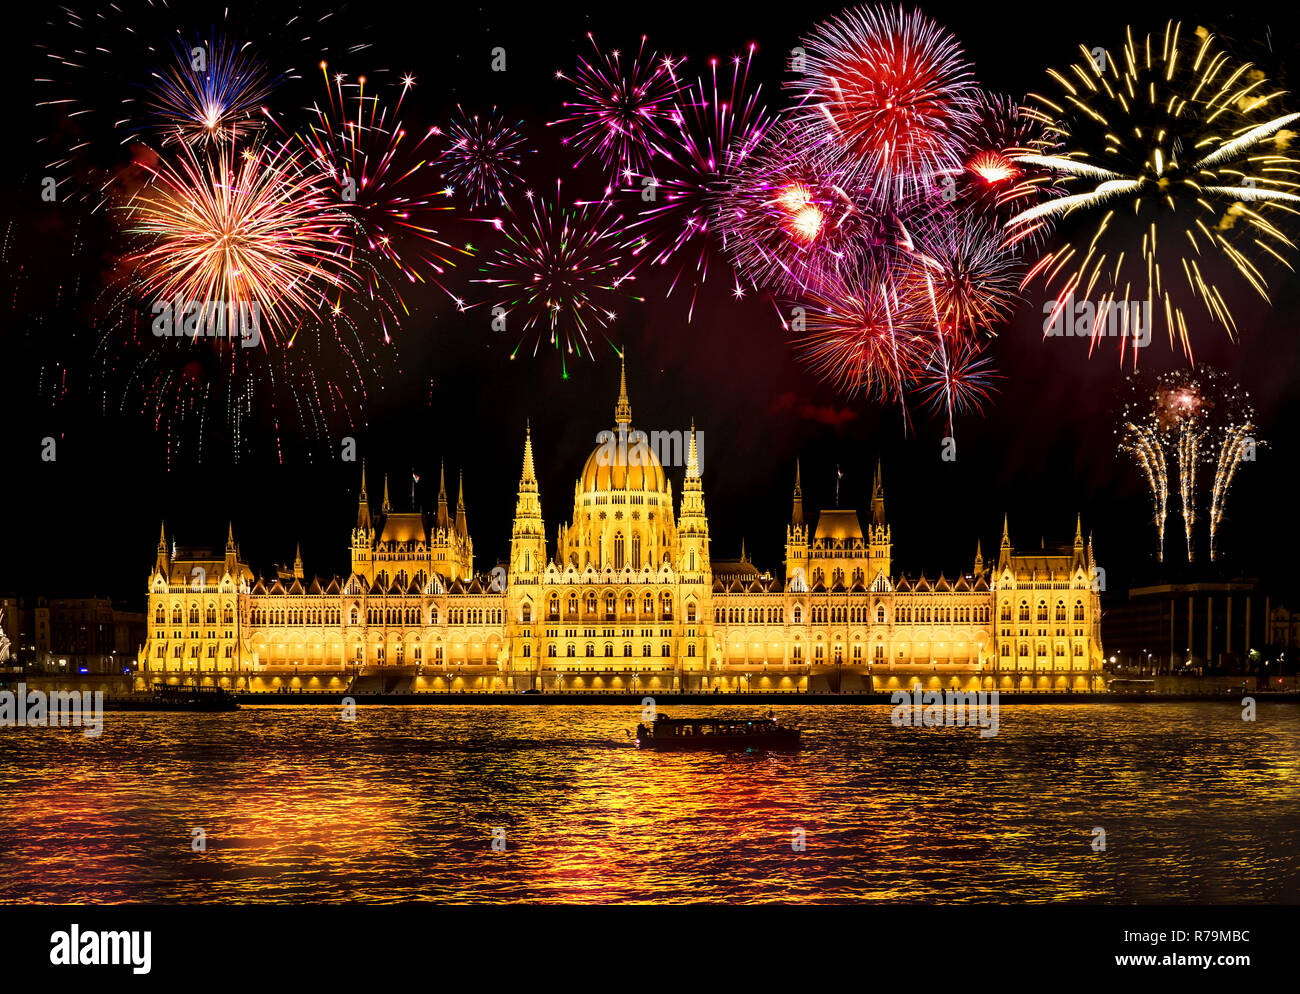 Silvester in der Stadt - Budapester Parlament mit Feuerwerk Stockfoto